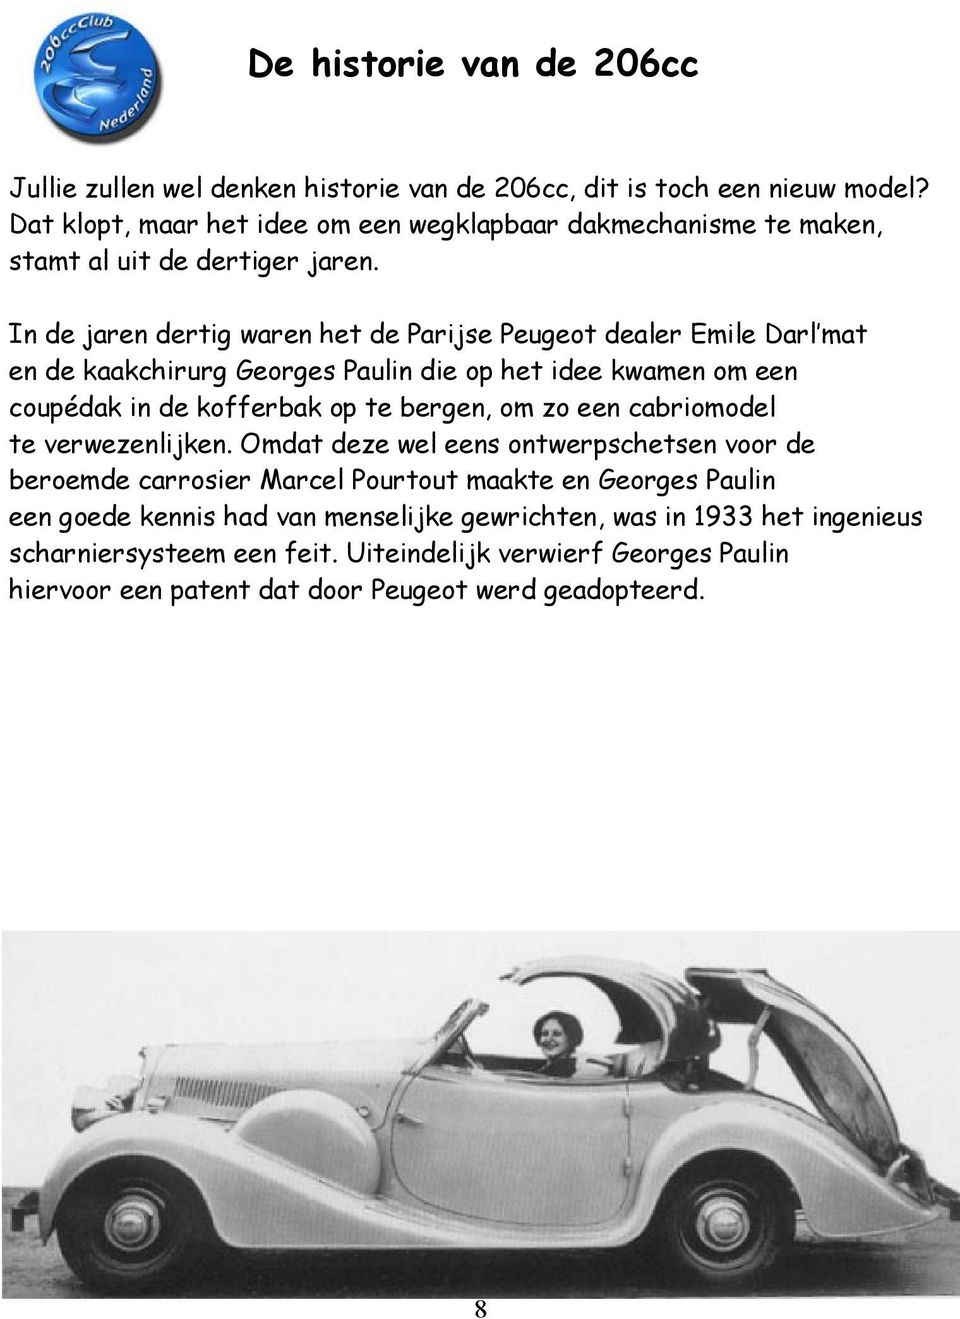 In de jaren dertig waren het de Parijse Peugeot dealer Emile Darl mat en de kaakchirurg Georges Paulin die op het idee kwamen om een coupédak in de kofferbak op te bergen, om zo